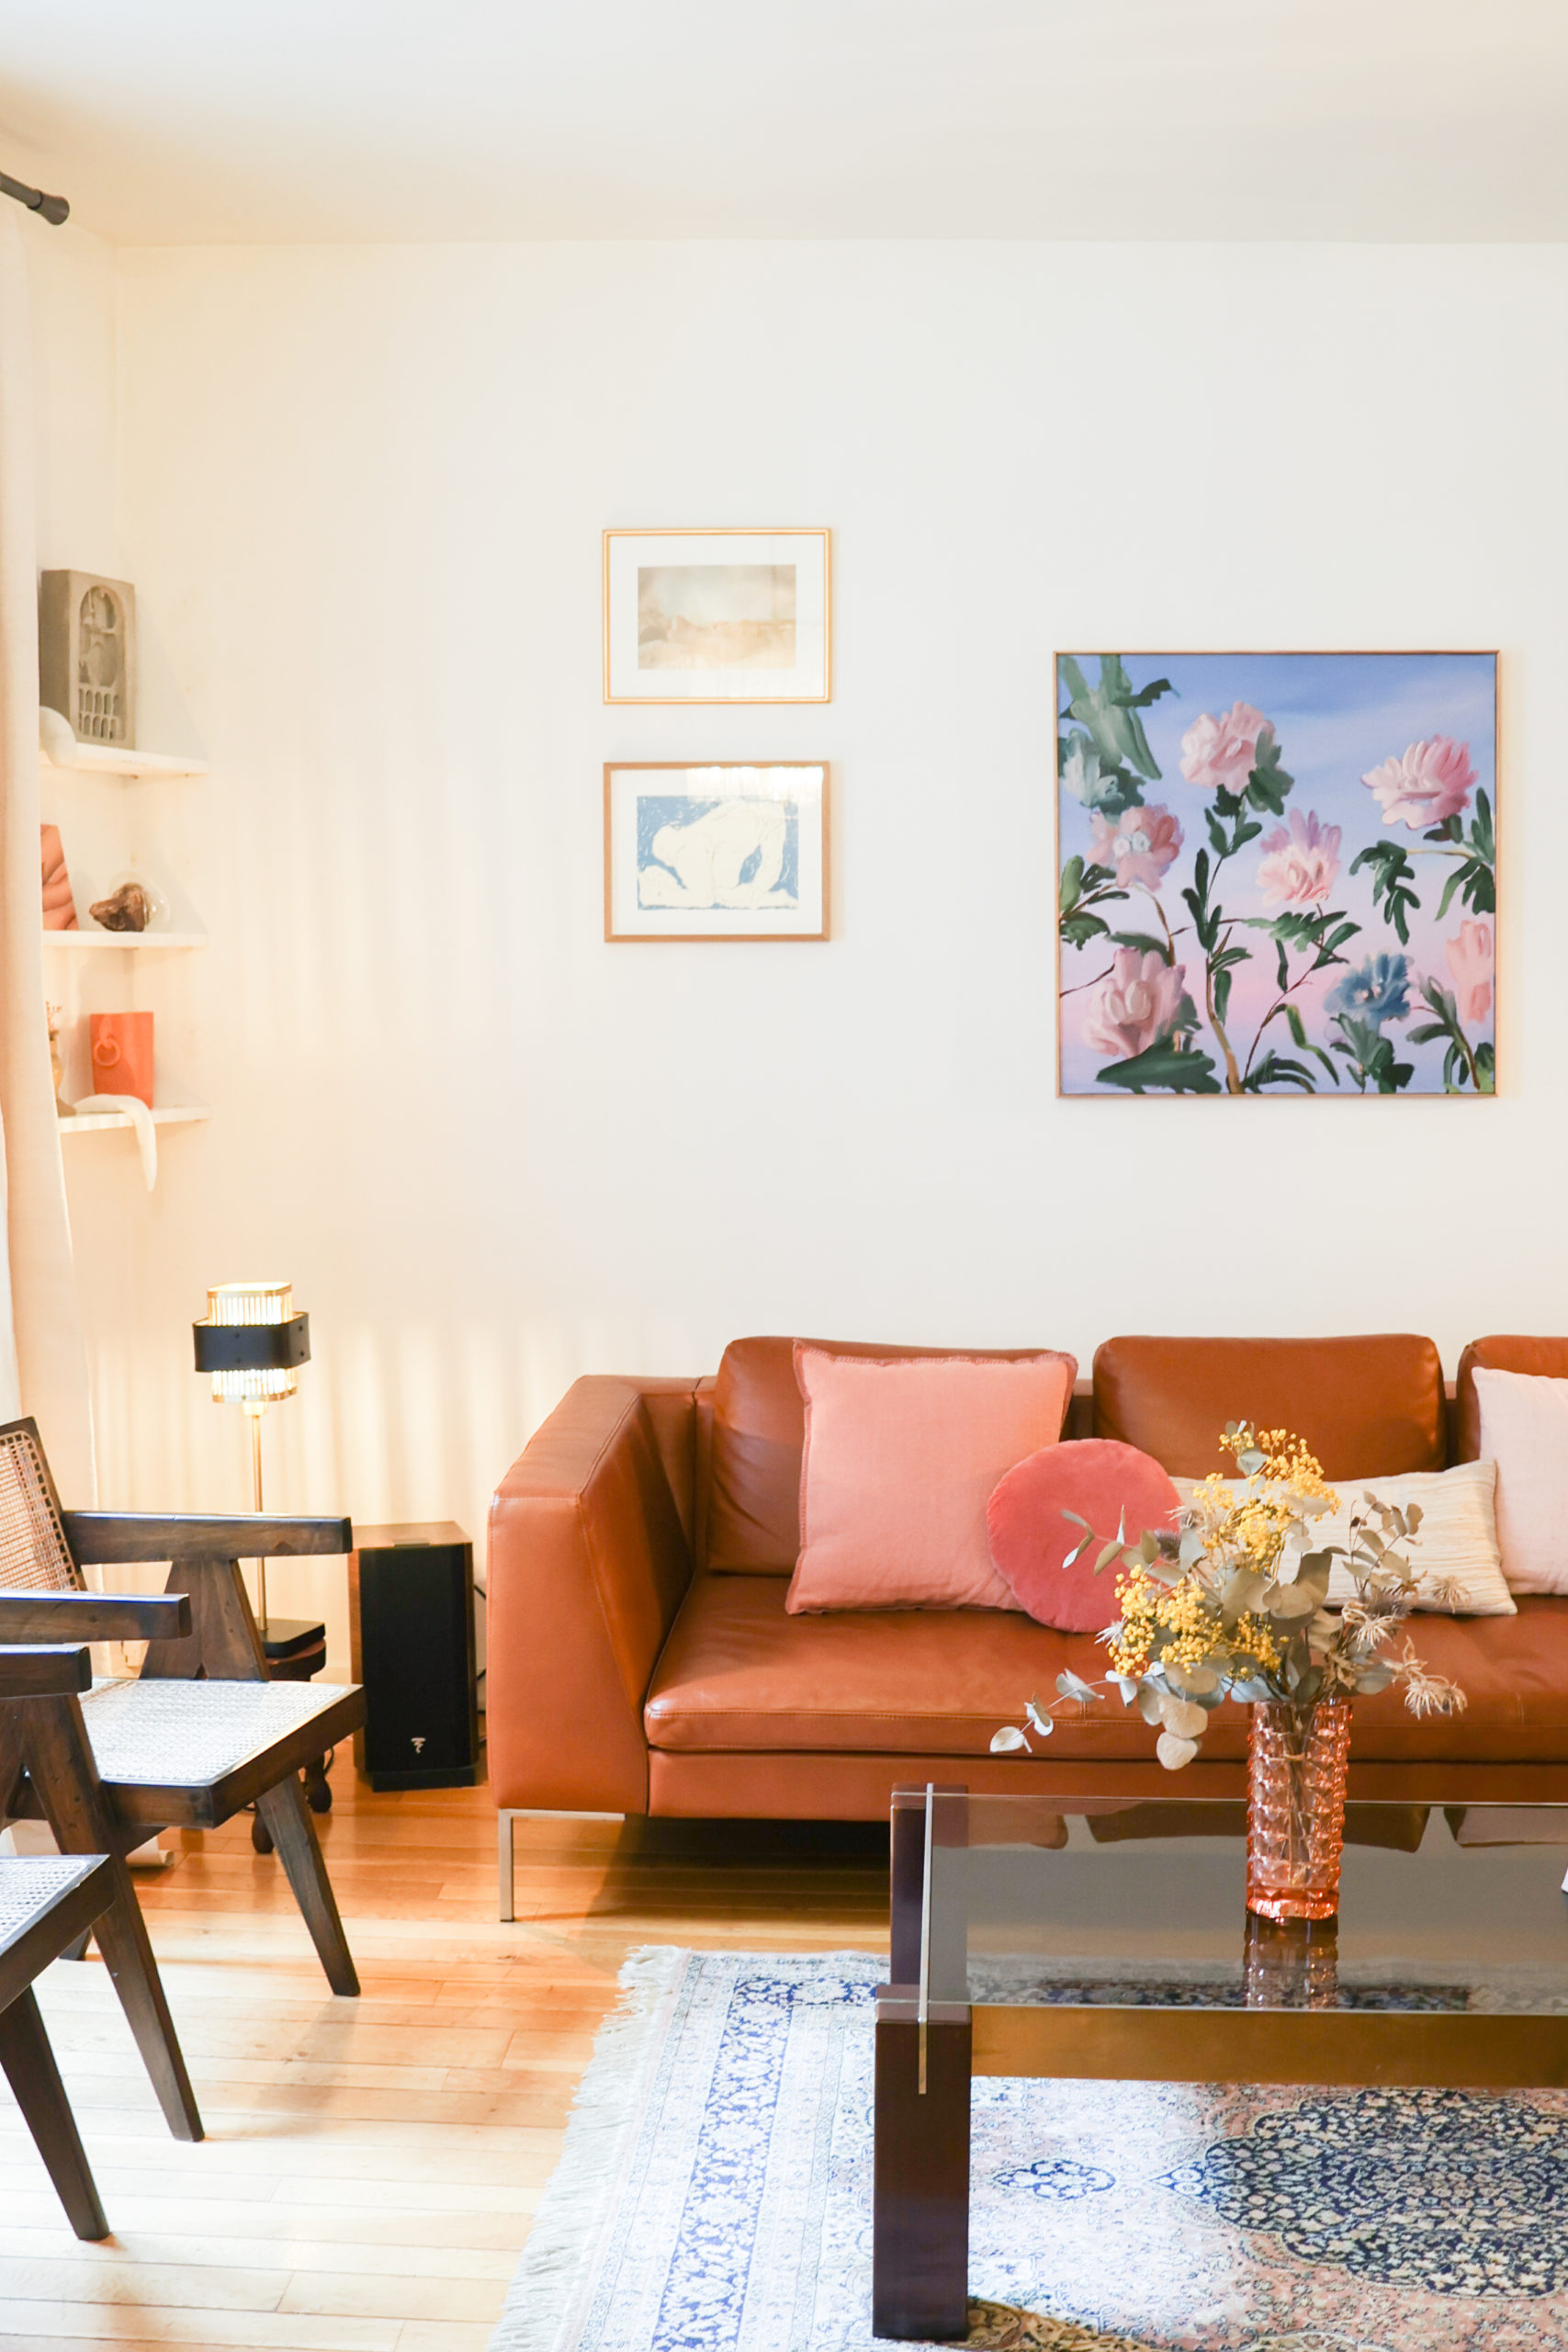 Interieur composé d'un canapé en cuir marron, de chaises designs et d'oeuvres d'art accrochés aux. murs